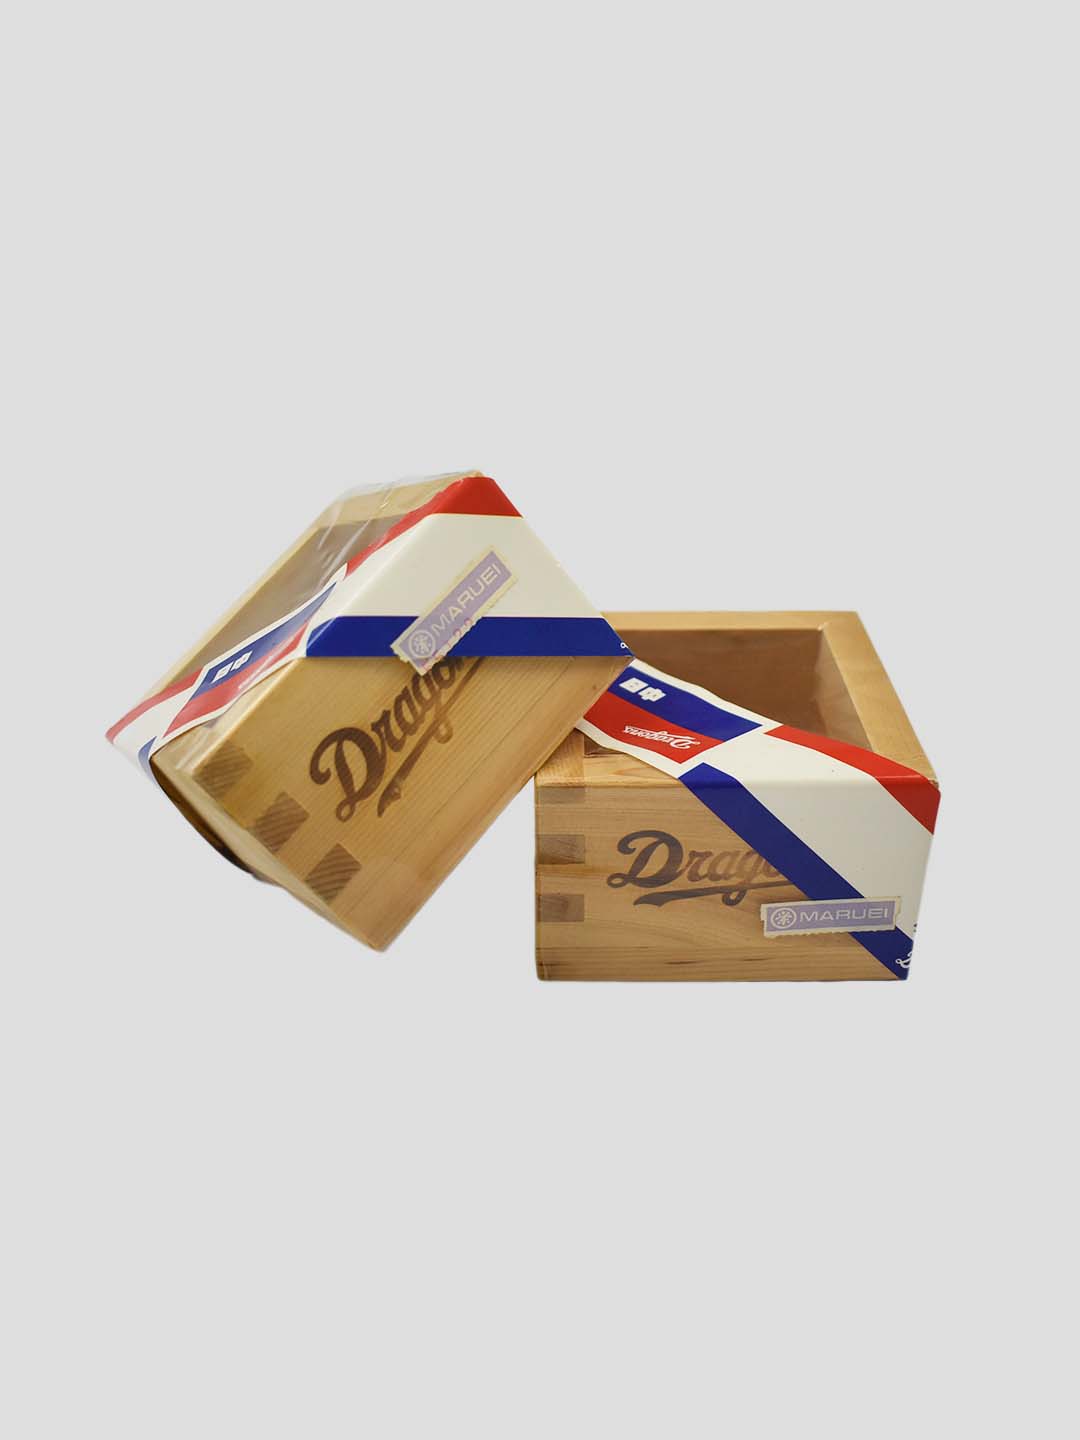 Chunichi Dragons Wooden Sake Cup Box Set Of 2